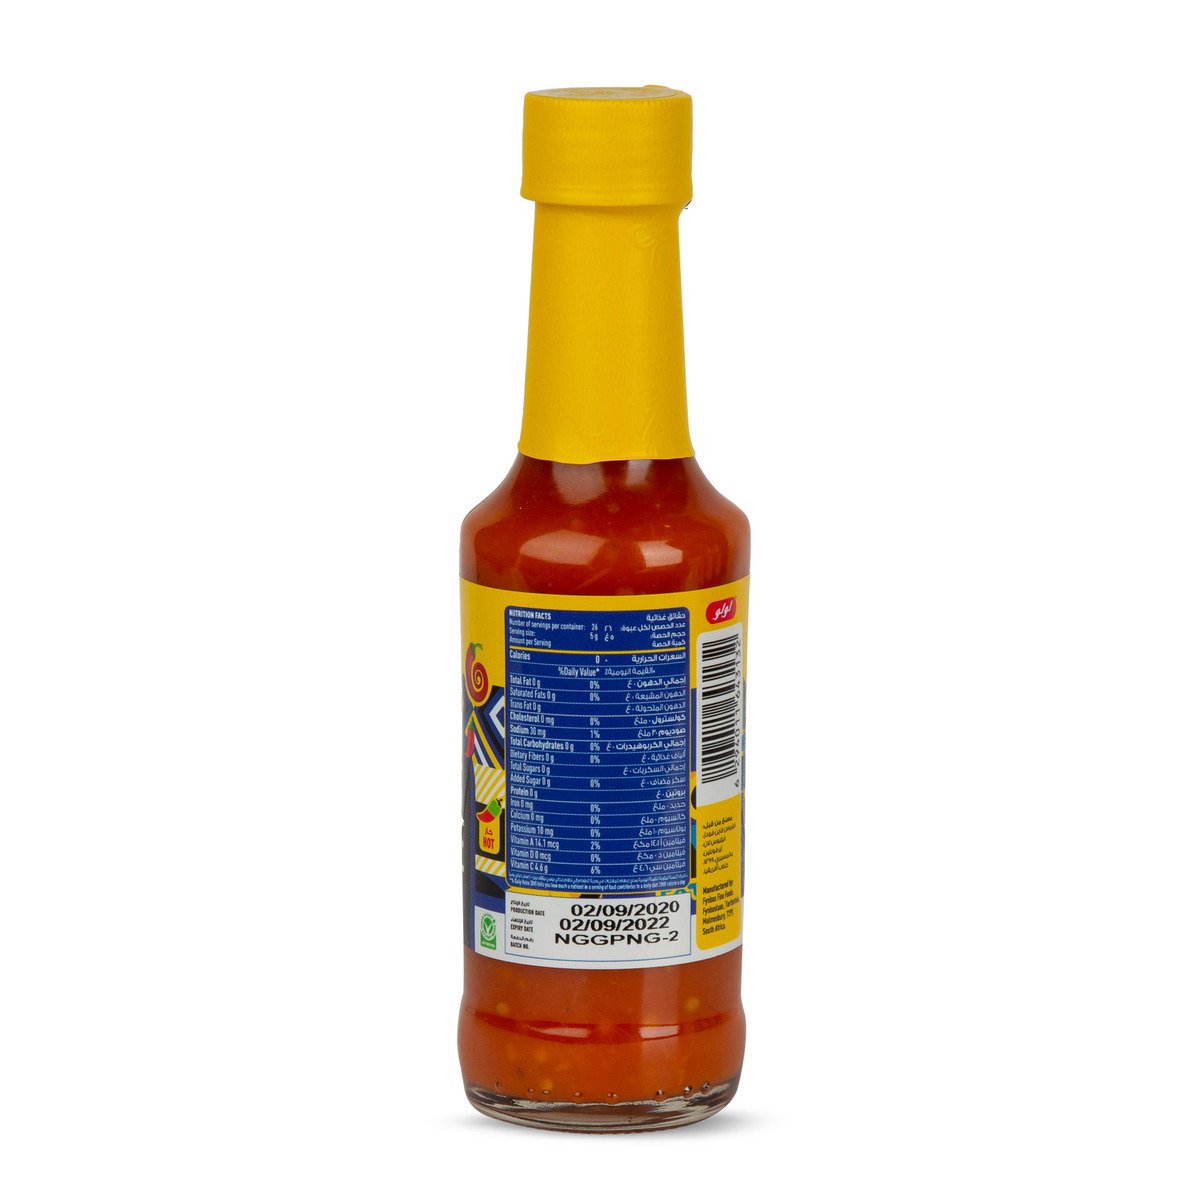 LuLu Habanero Sauce 130 g